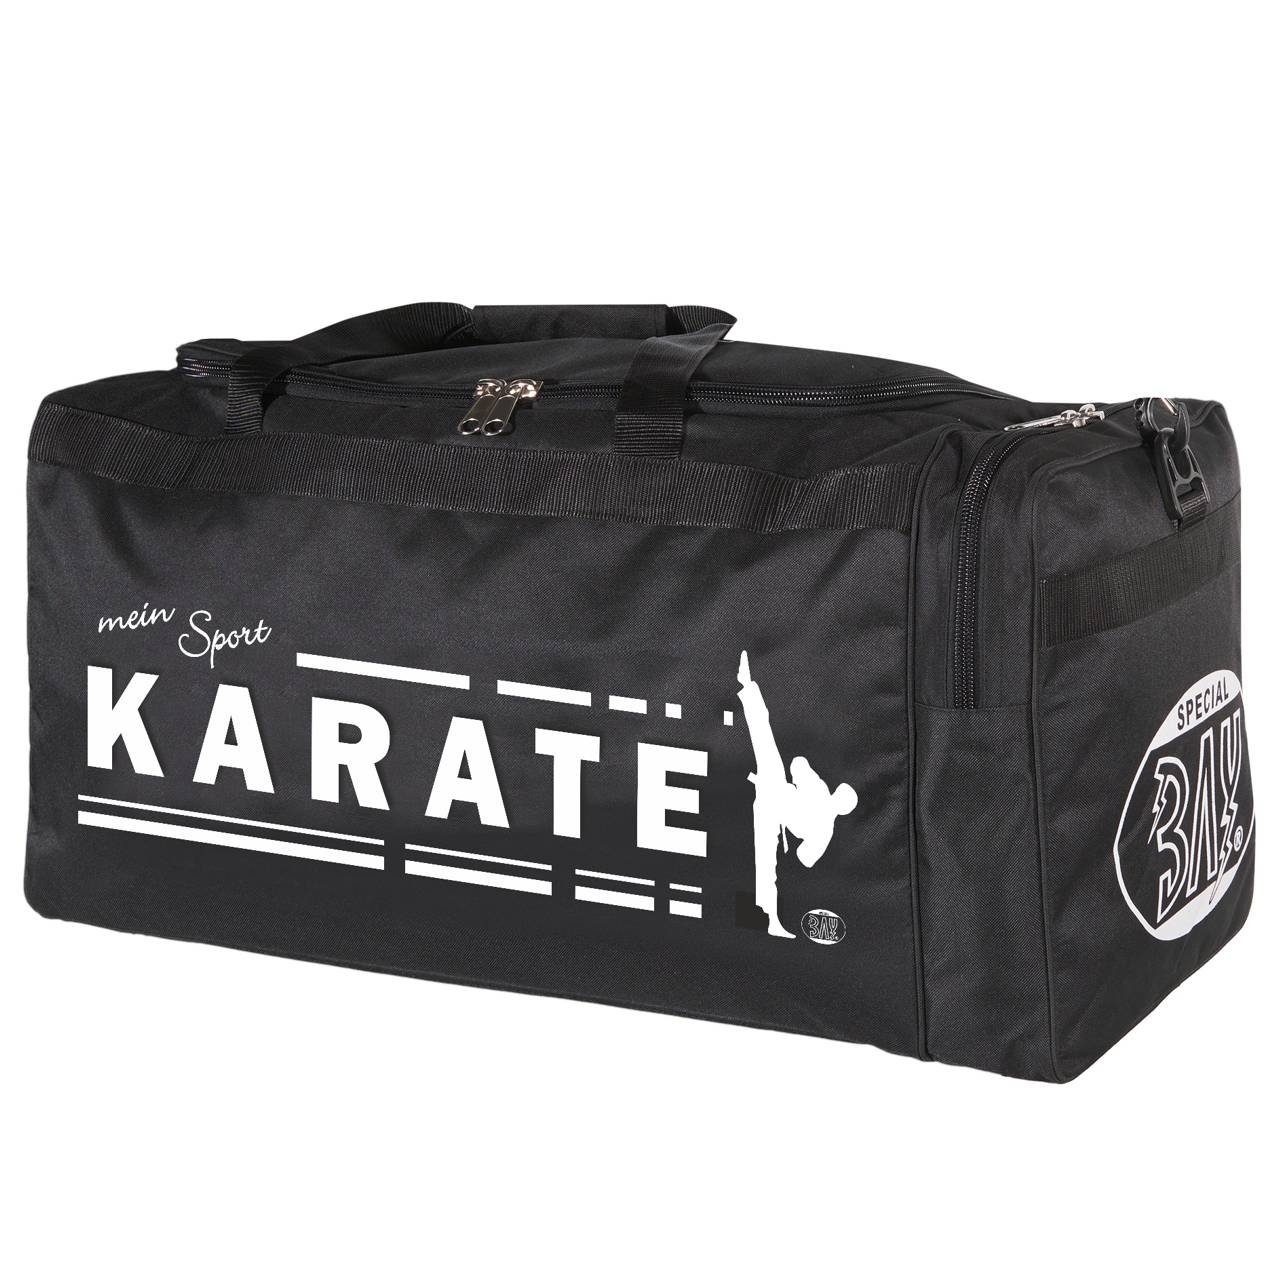 BAY-Sports Sporttasche Sporttasche mein Sport Karate schwarz 70 cm